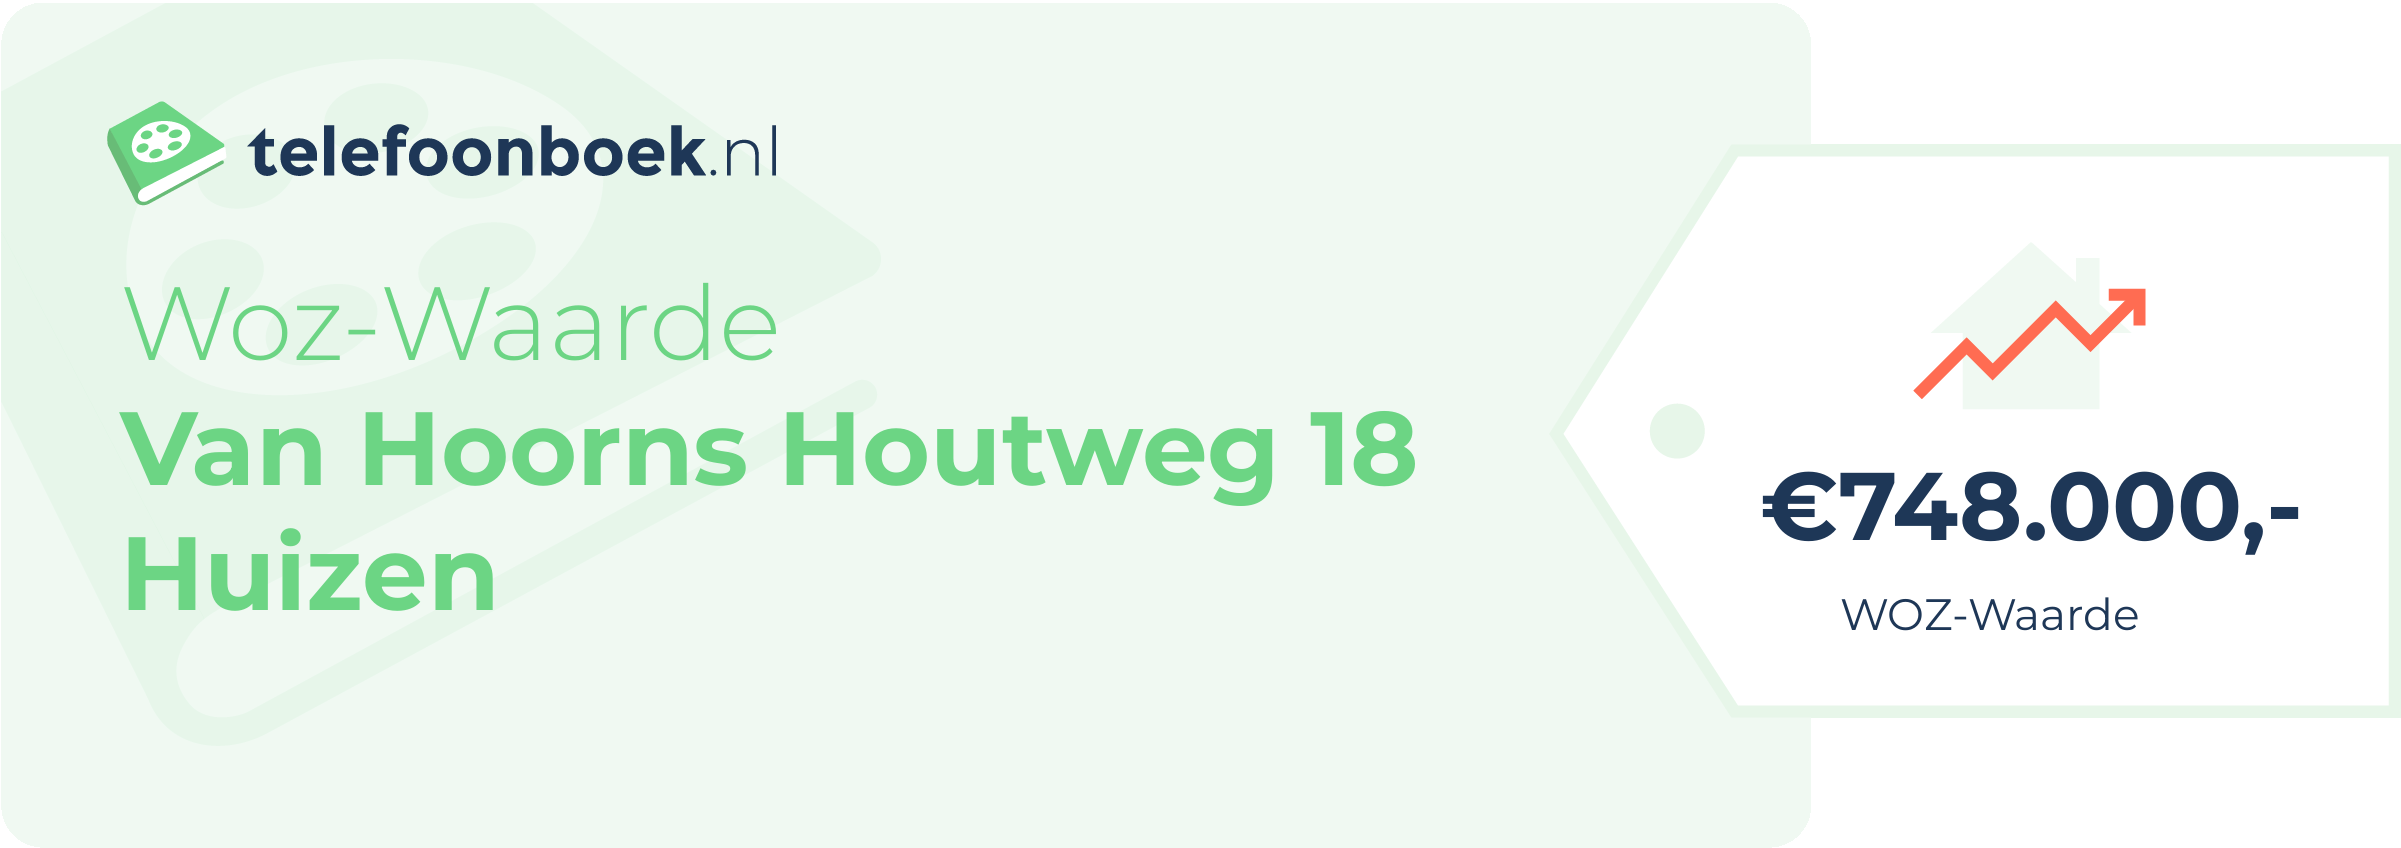 WOZ-waarde Van Hoorns Houtweg 18 Huizen